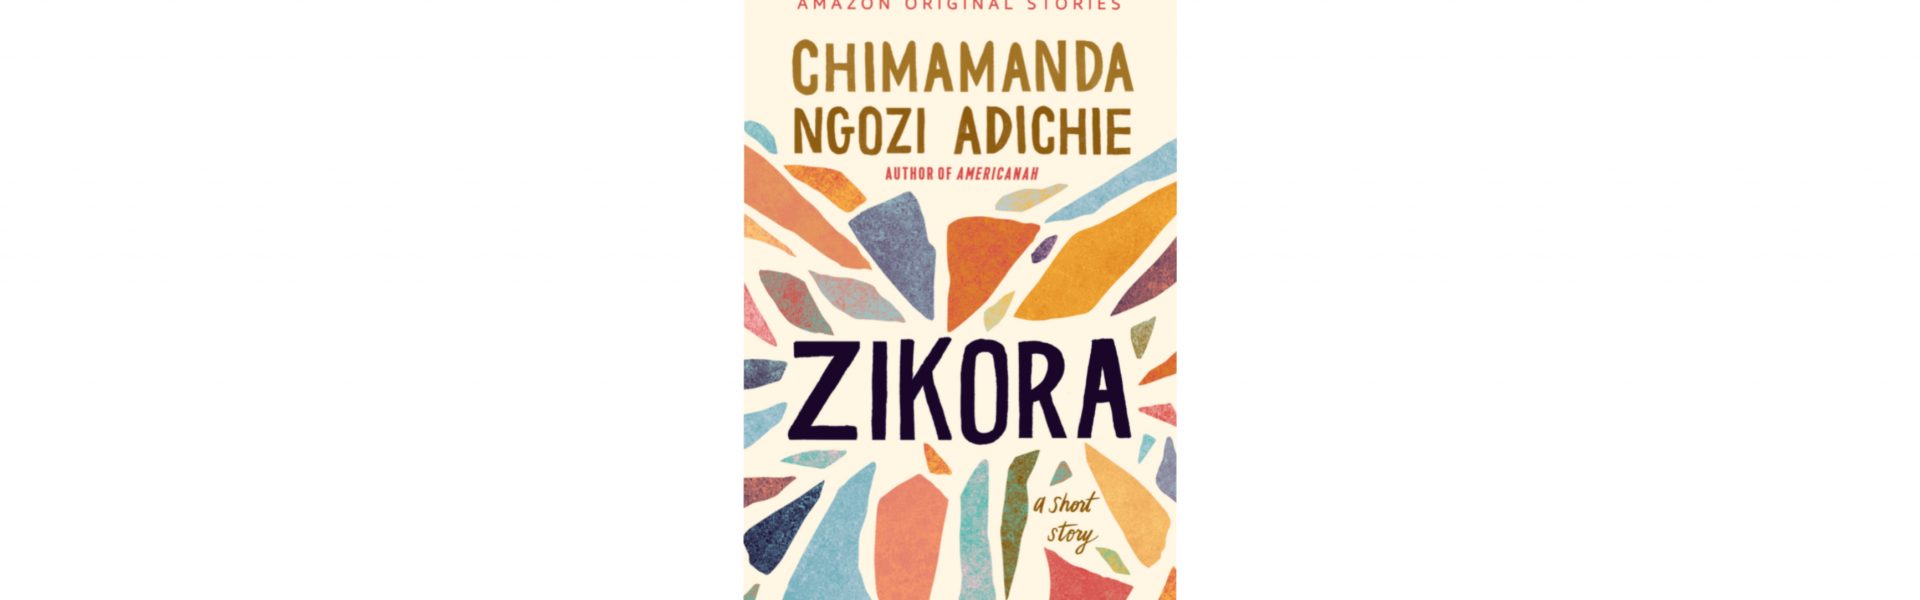 Zikora - Chimamanda Ngozi Adichie